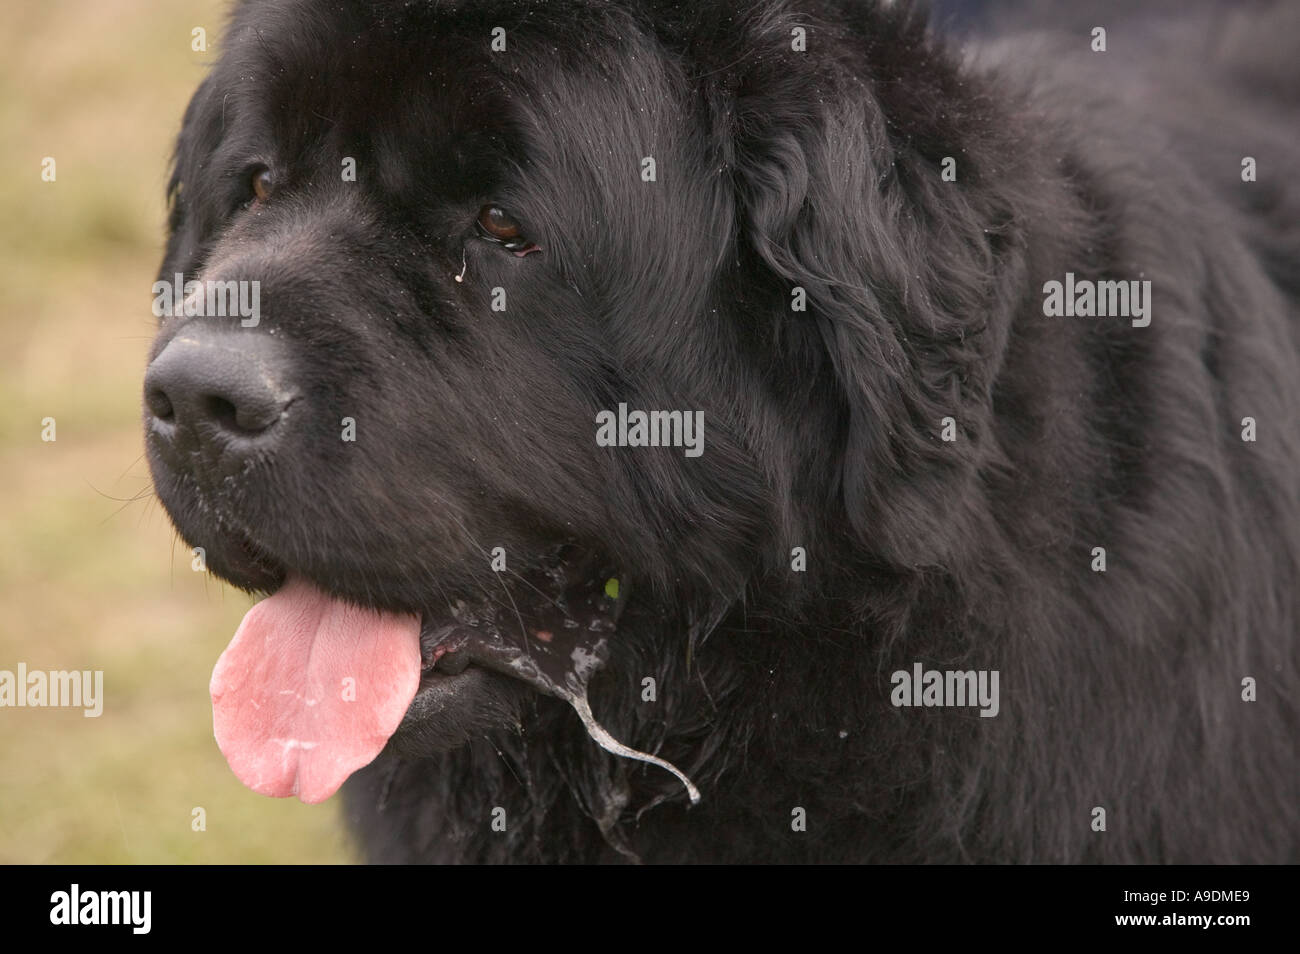 a Newfoundland dog slathering Stock Photo